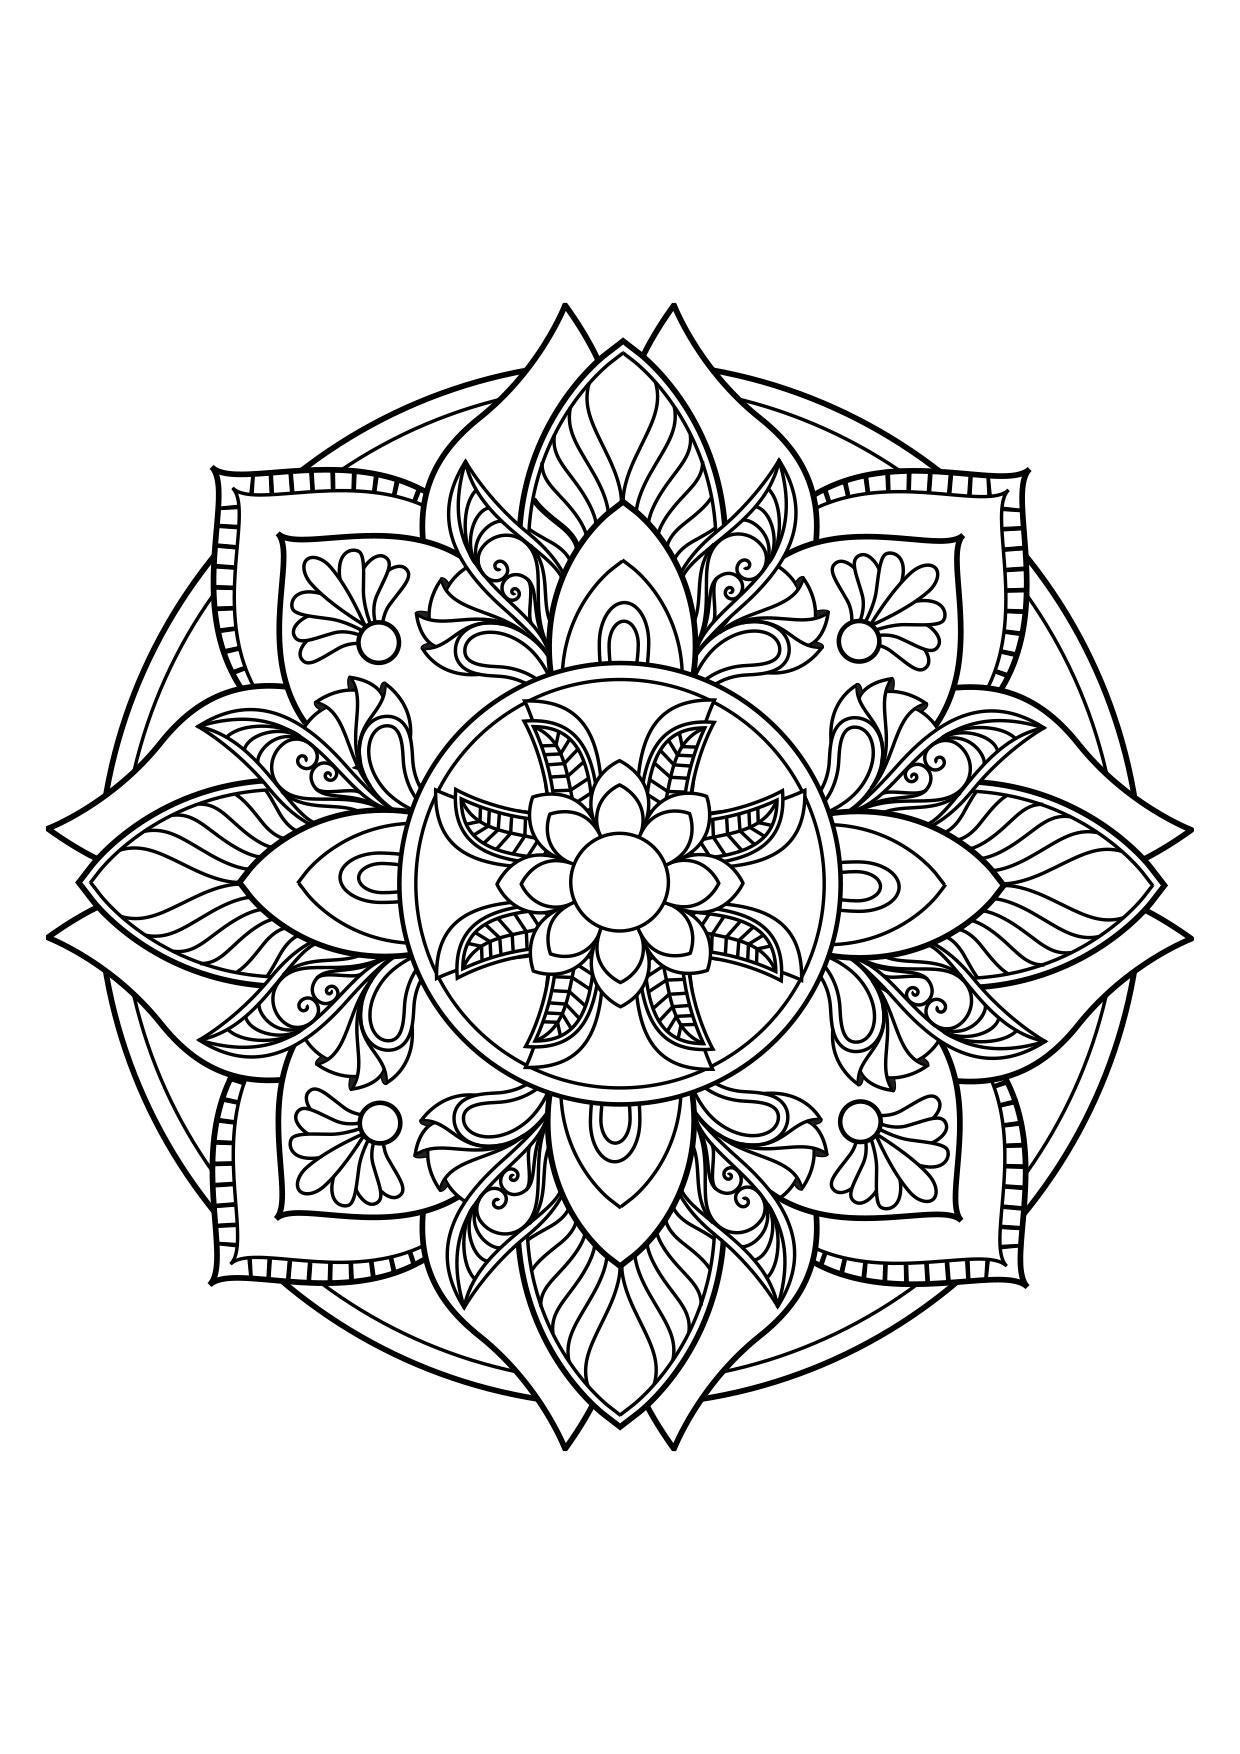 Coloriage Mandala - Coloriages Gratuits À Imprimer avec Coloriage Mandala